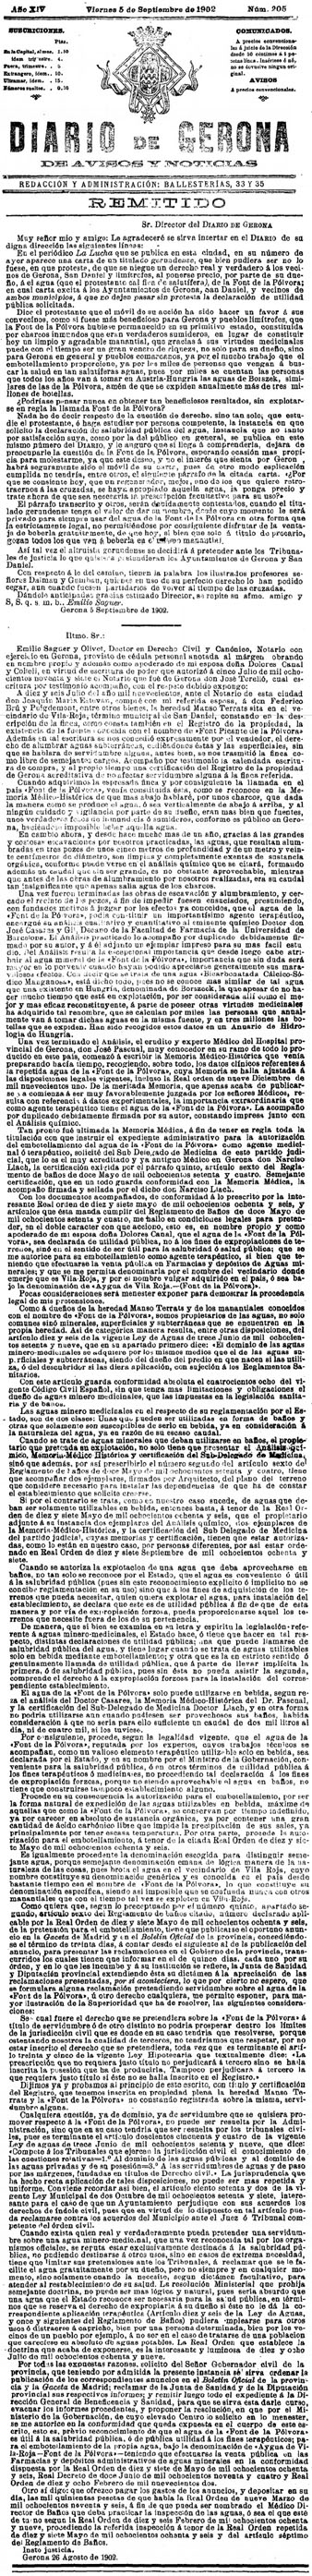 Article publicat al 'Diario de Gerona de avisos i notícias' del 5 de setembre de 1902, on es defensa l'explotació privada de l'aigua de la Font de la Pólvora, i s'hi exposen les obres de millora que s'hi han fet